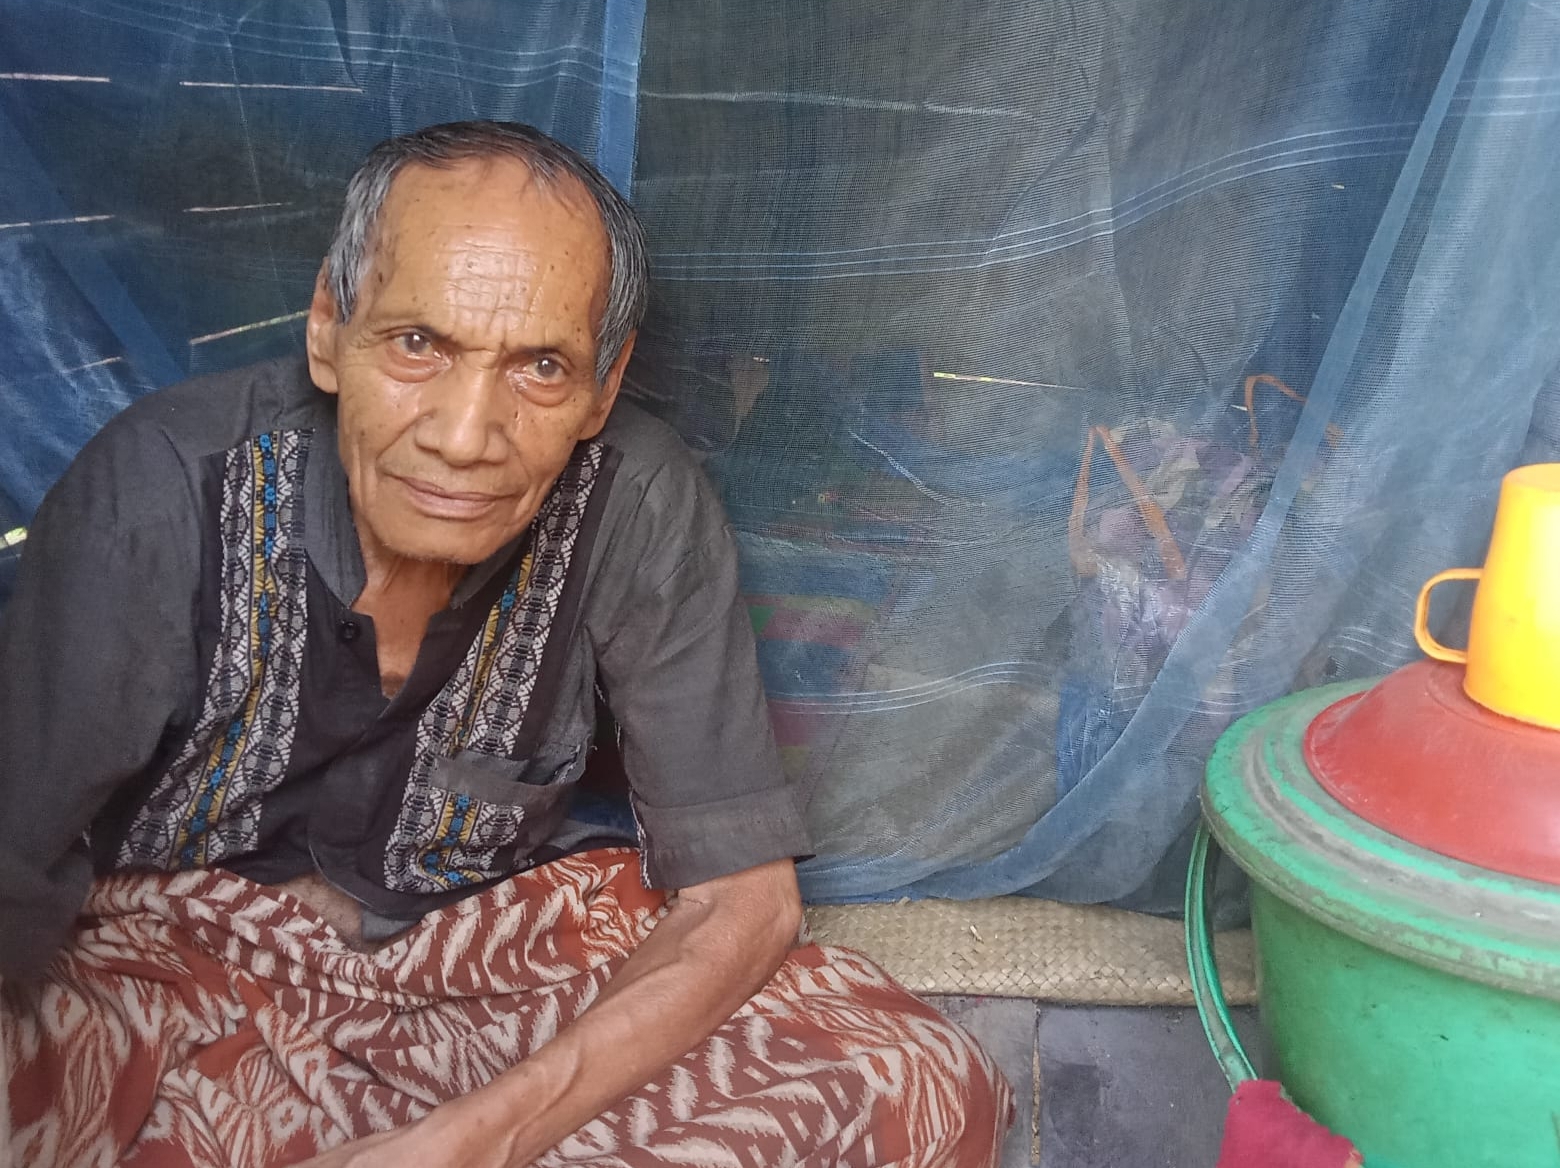 Kakek Deling Rangkuti (77) warga Desa Jambur Padang Matinggi, Kecamatan Panyabungan Utara, terpaksa menjalani kisah pilunya lantaran diterpa penyakit kelumpuhan dan masalah kemiskinan. Kamis (27/4/2023) fhoto : istimewa.